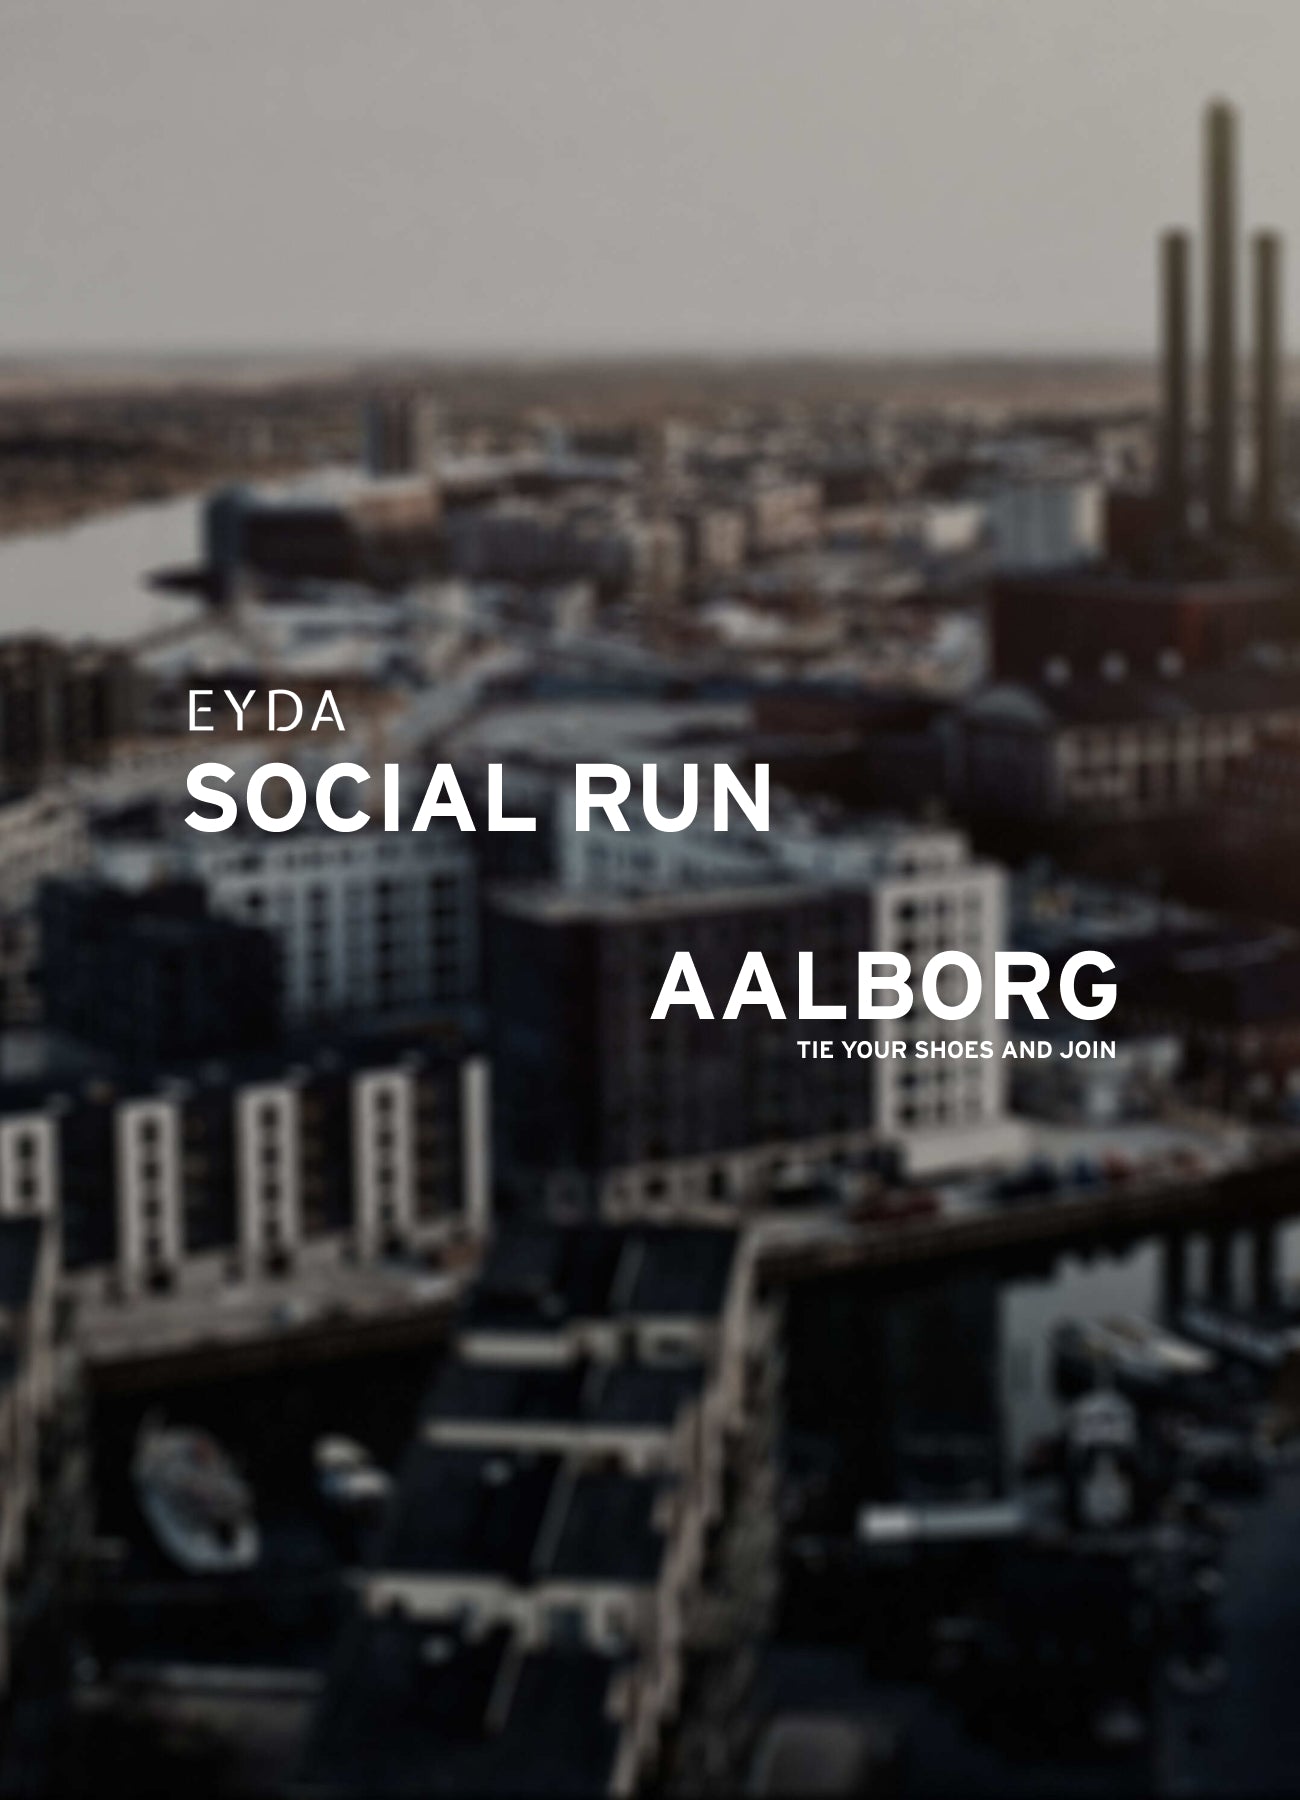 EYDA SOCIAL RUN Aalborg